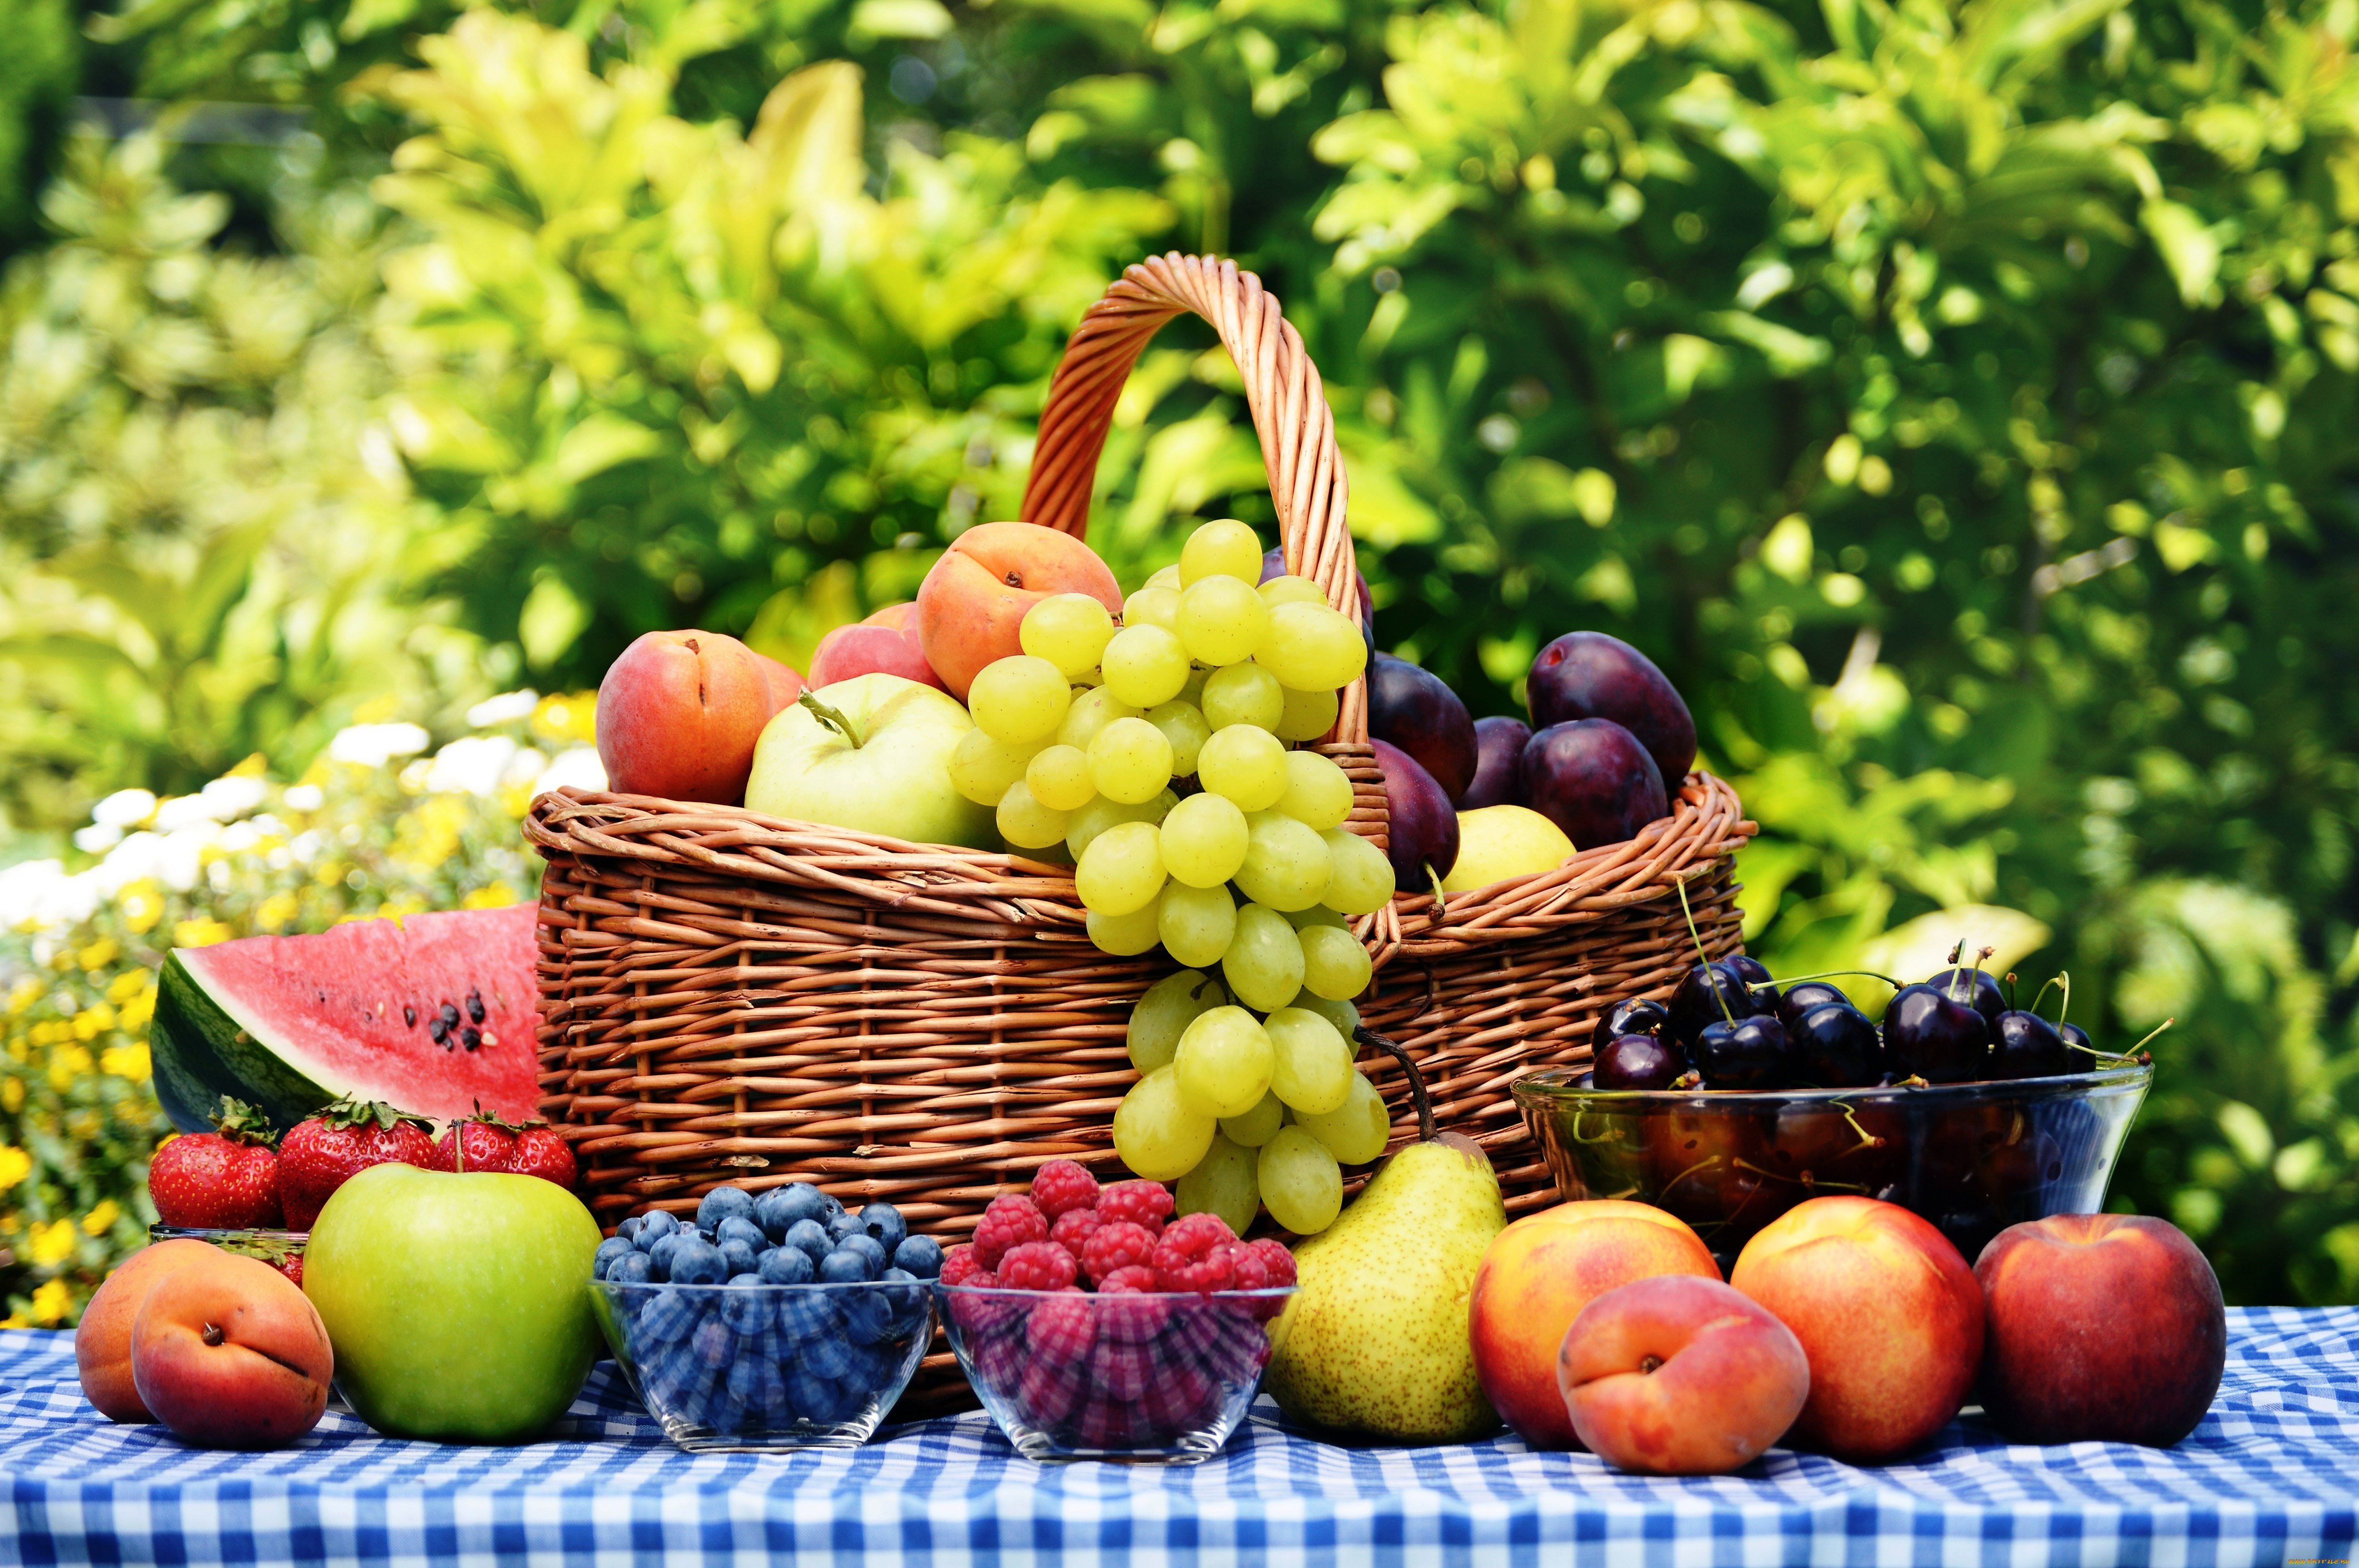 еда, фрукты, ягоды, груши, арбуз, сливы, яблоки, черника, малина, виноград, абрикосы, клубника, персики, нектарин, вишня